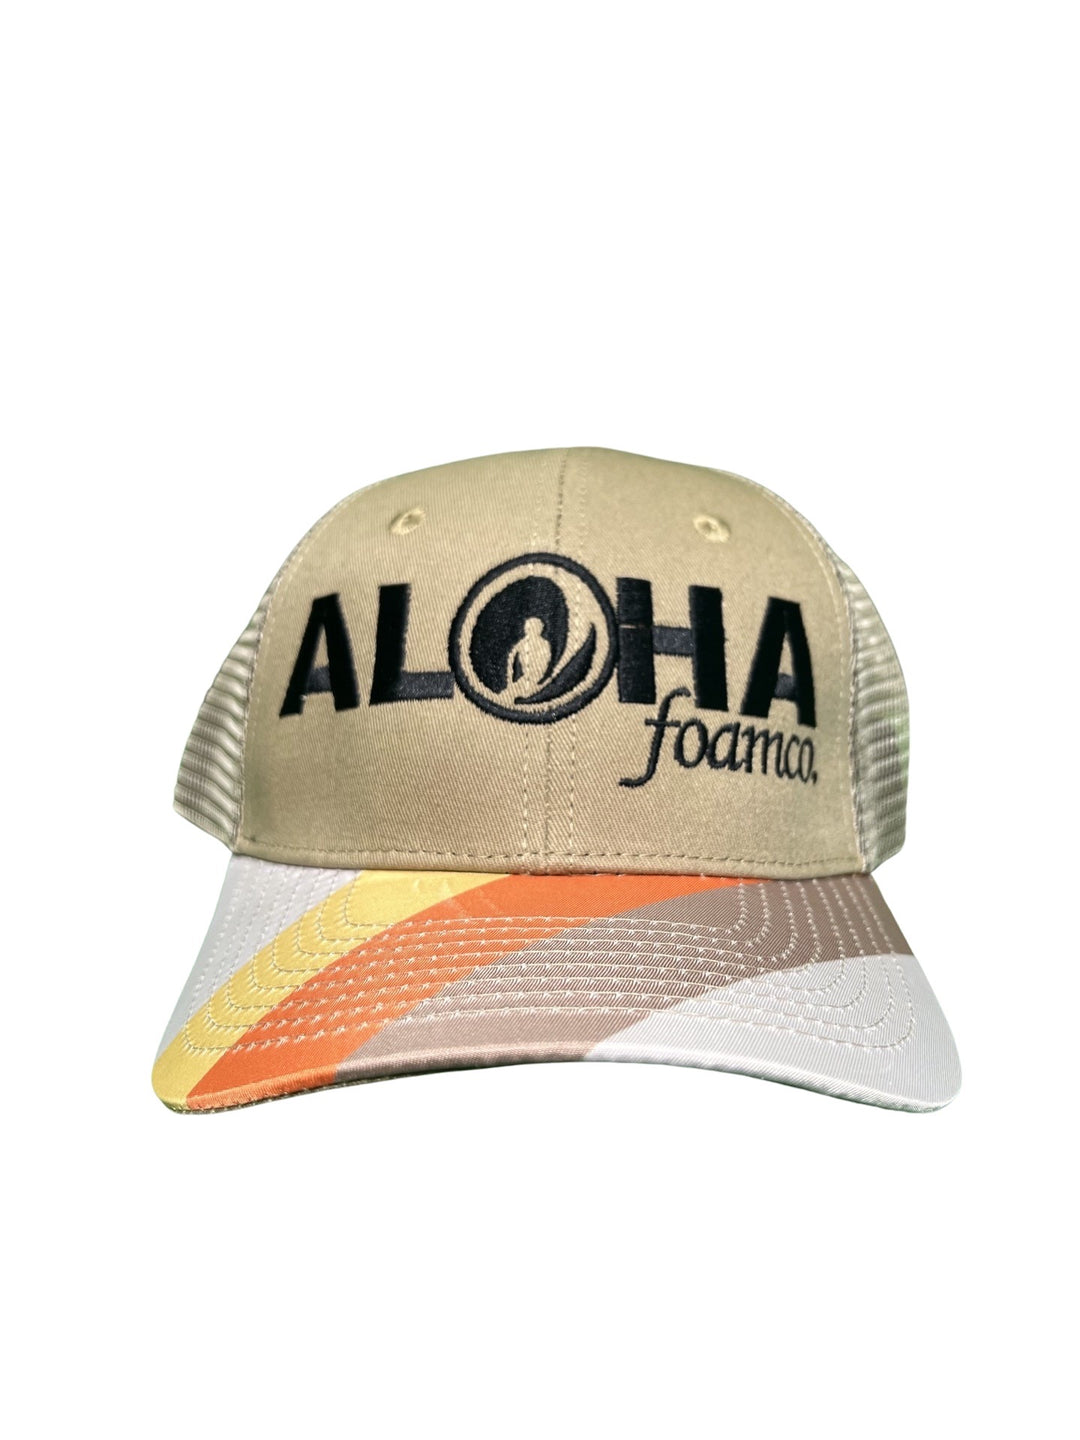 Aloha Foam Co Circle Logo Snapback